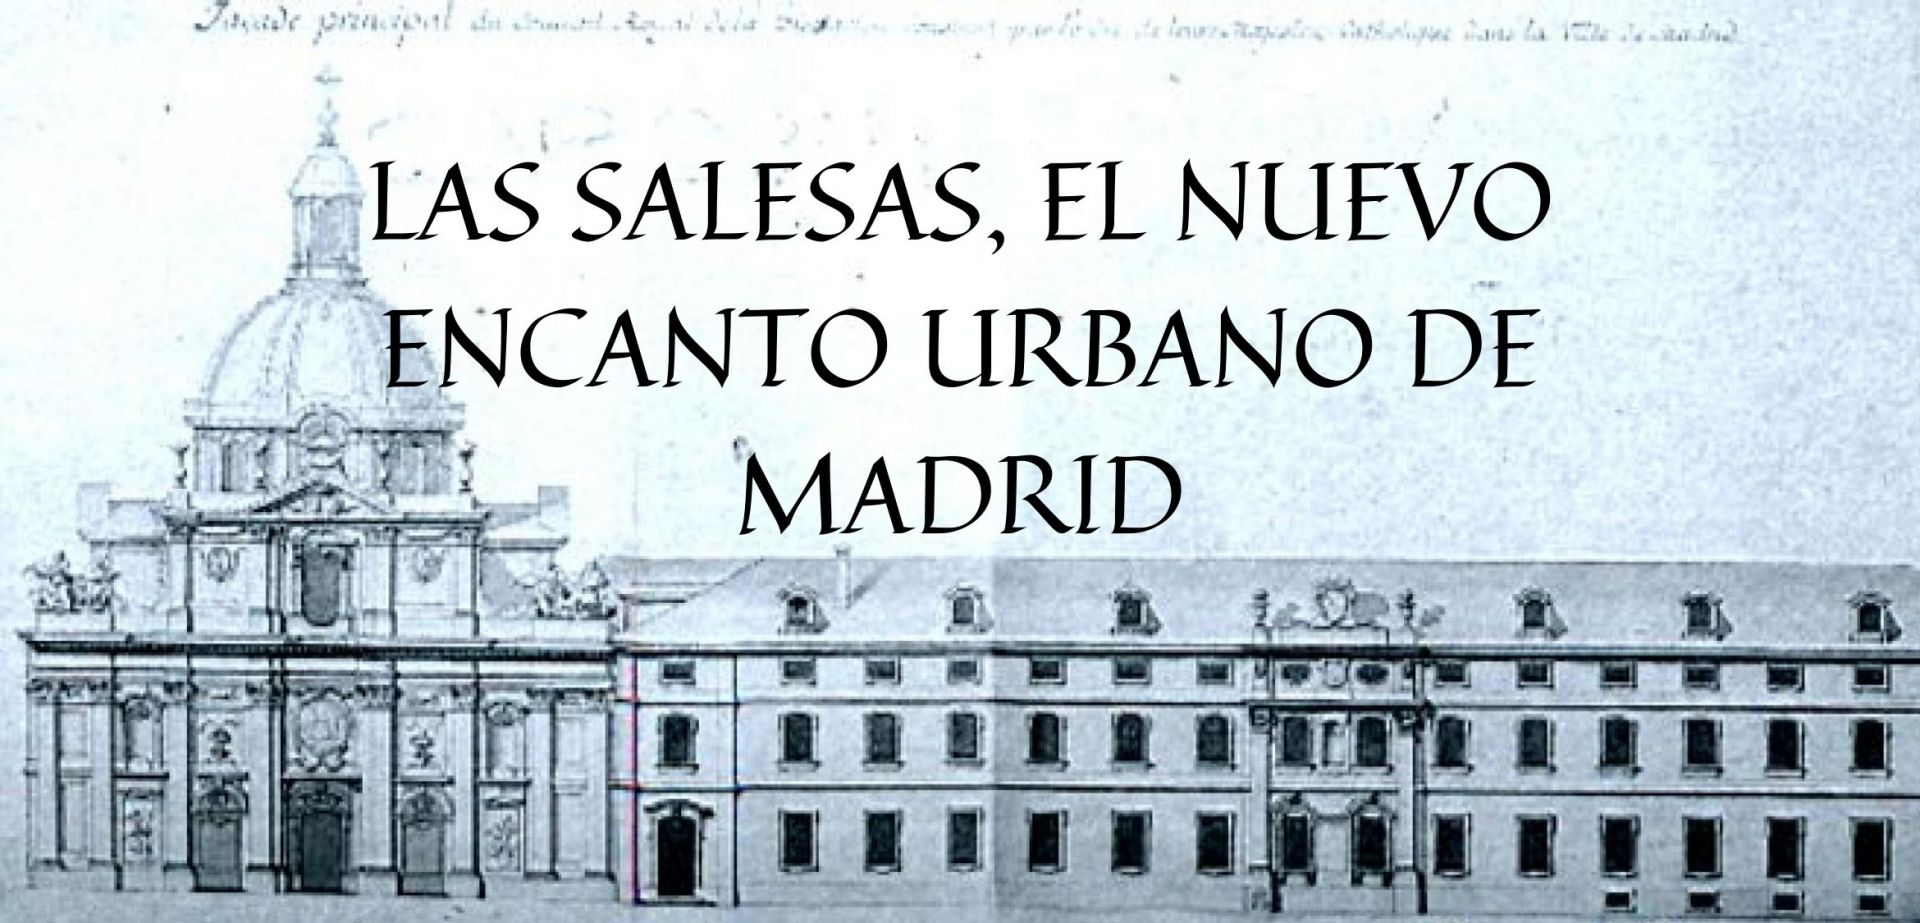 Las Salesas, el nuevo encanto urbano de Madrid